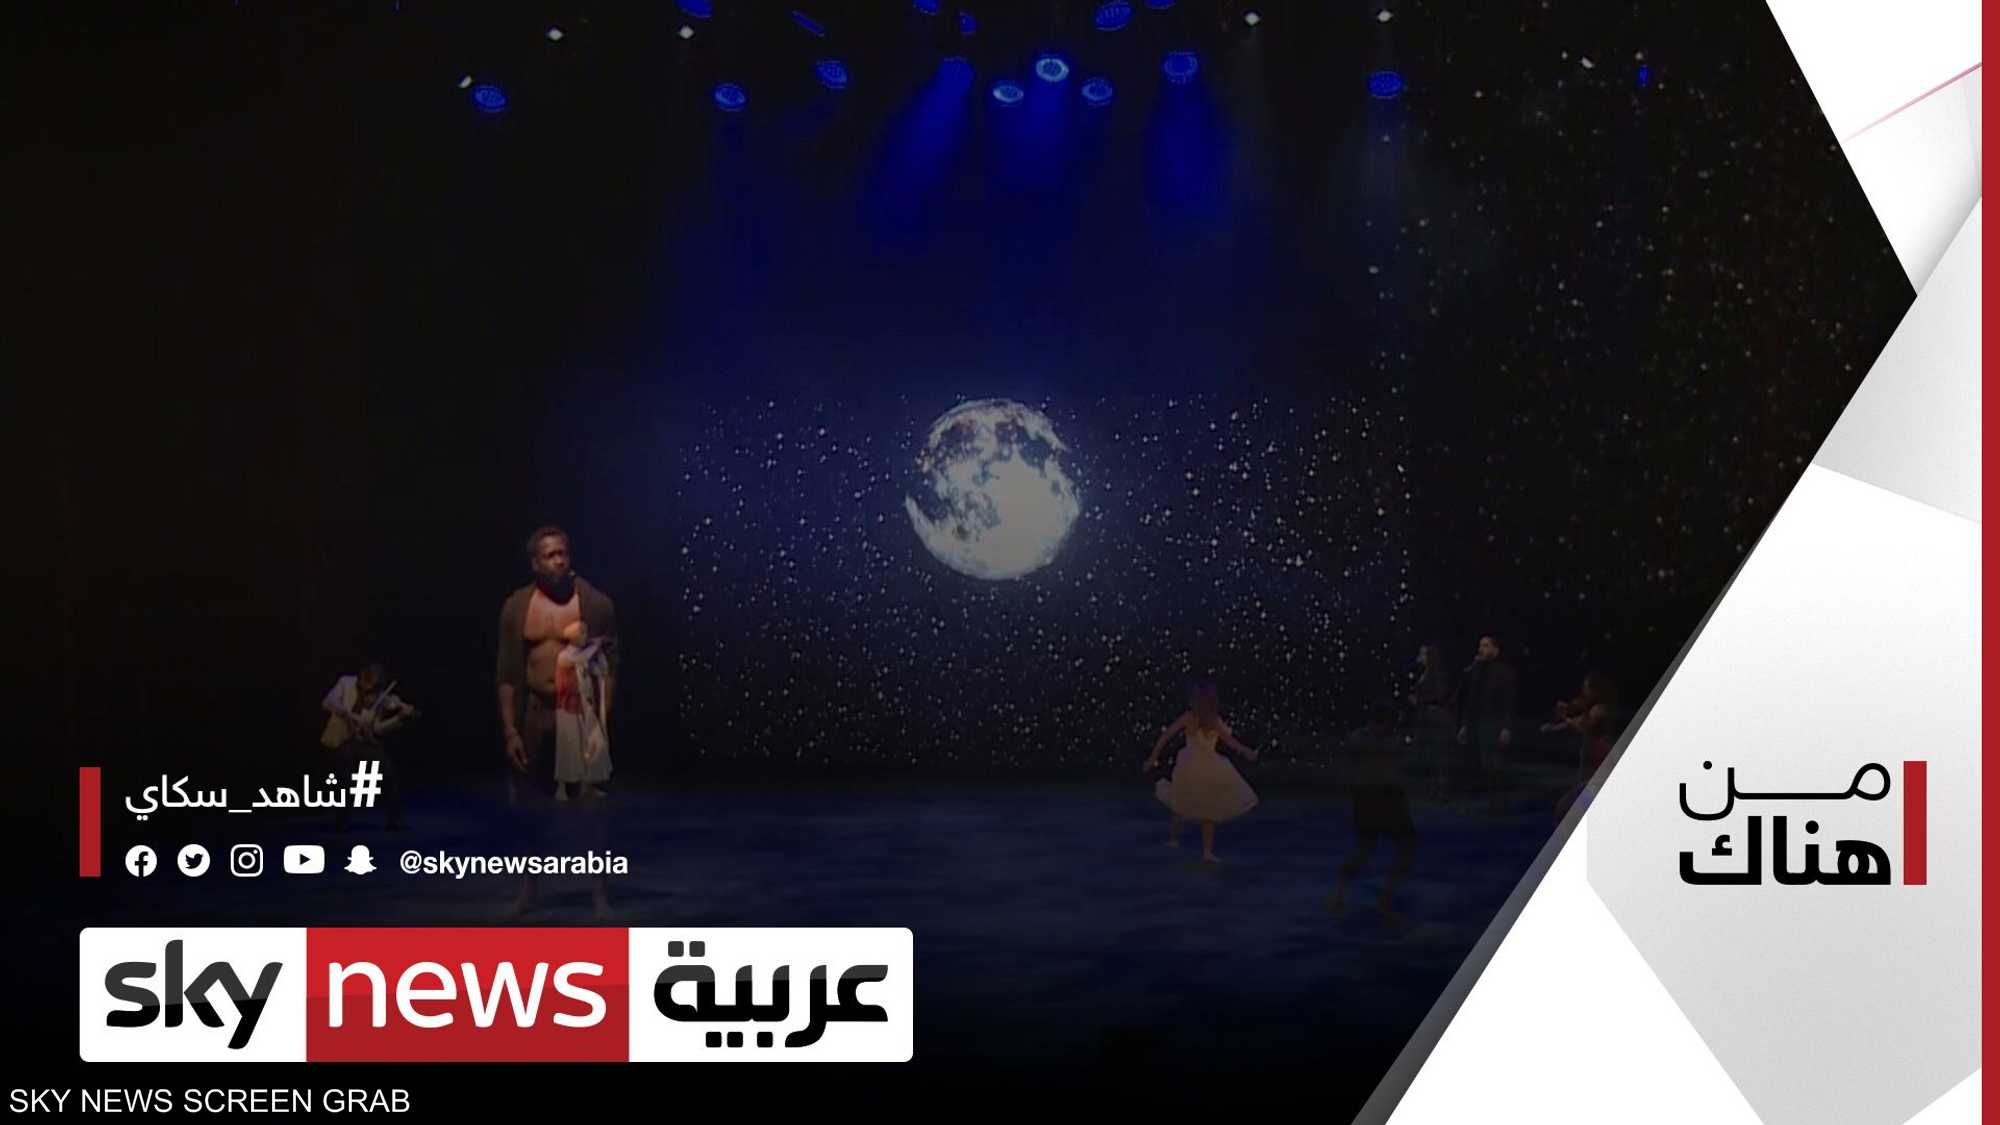 عروض أيام قرطاج المسرحية تبهج الحضور في تونس